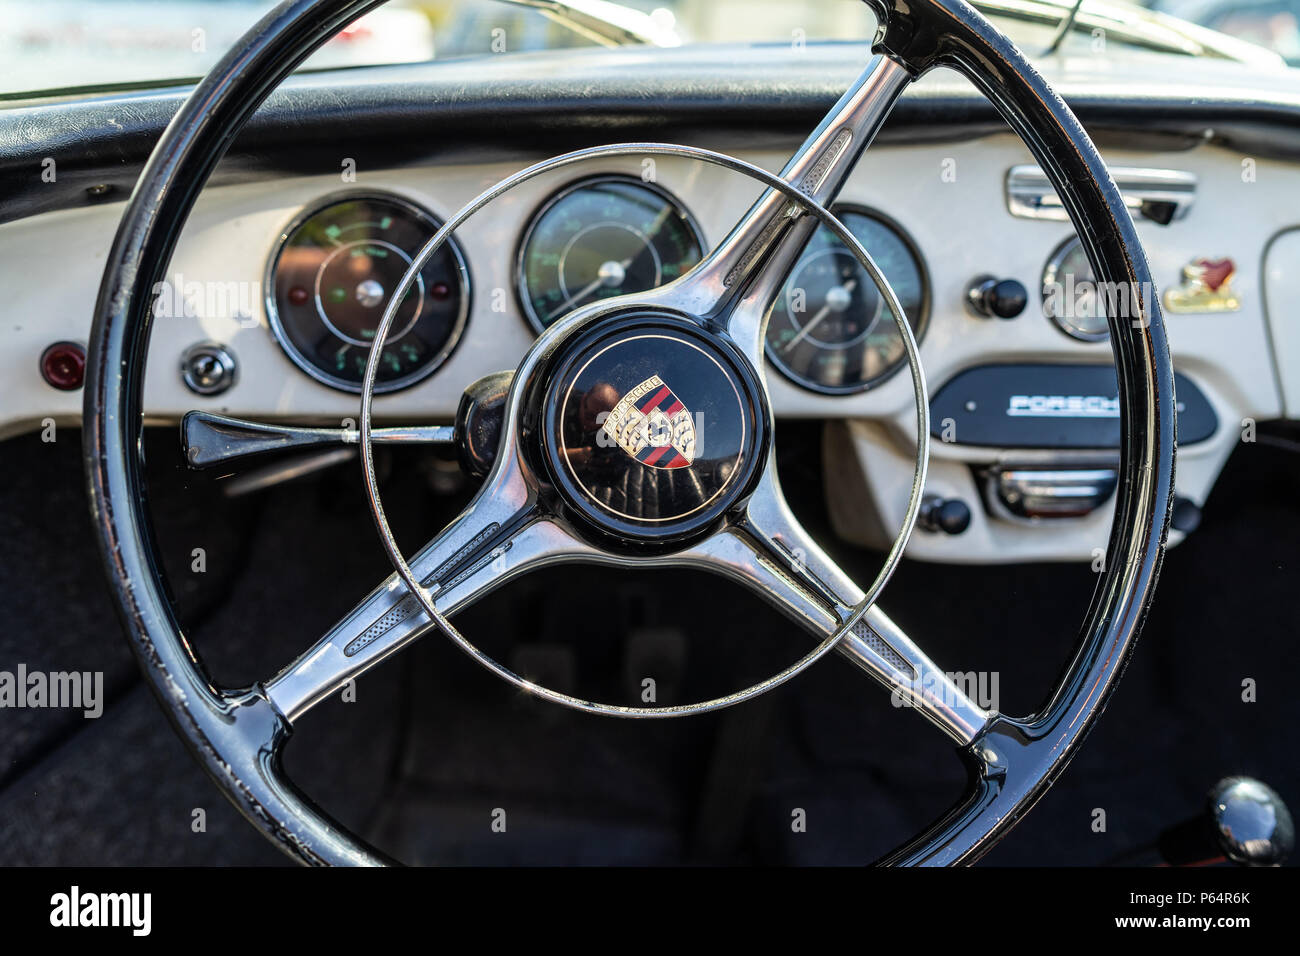 L'intérieur de voiture de sport Porsche 356B. Point sur le premier plan. Oldtimertage Berlin-brandebourg (31ème jour). Oldtimer Berlin-brandebourg Banque D'Images